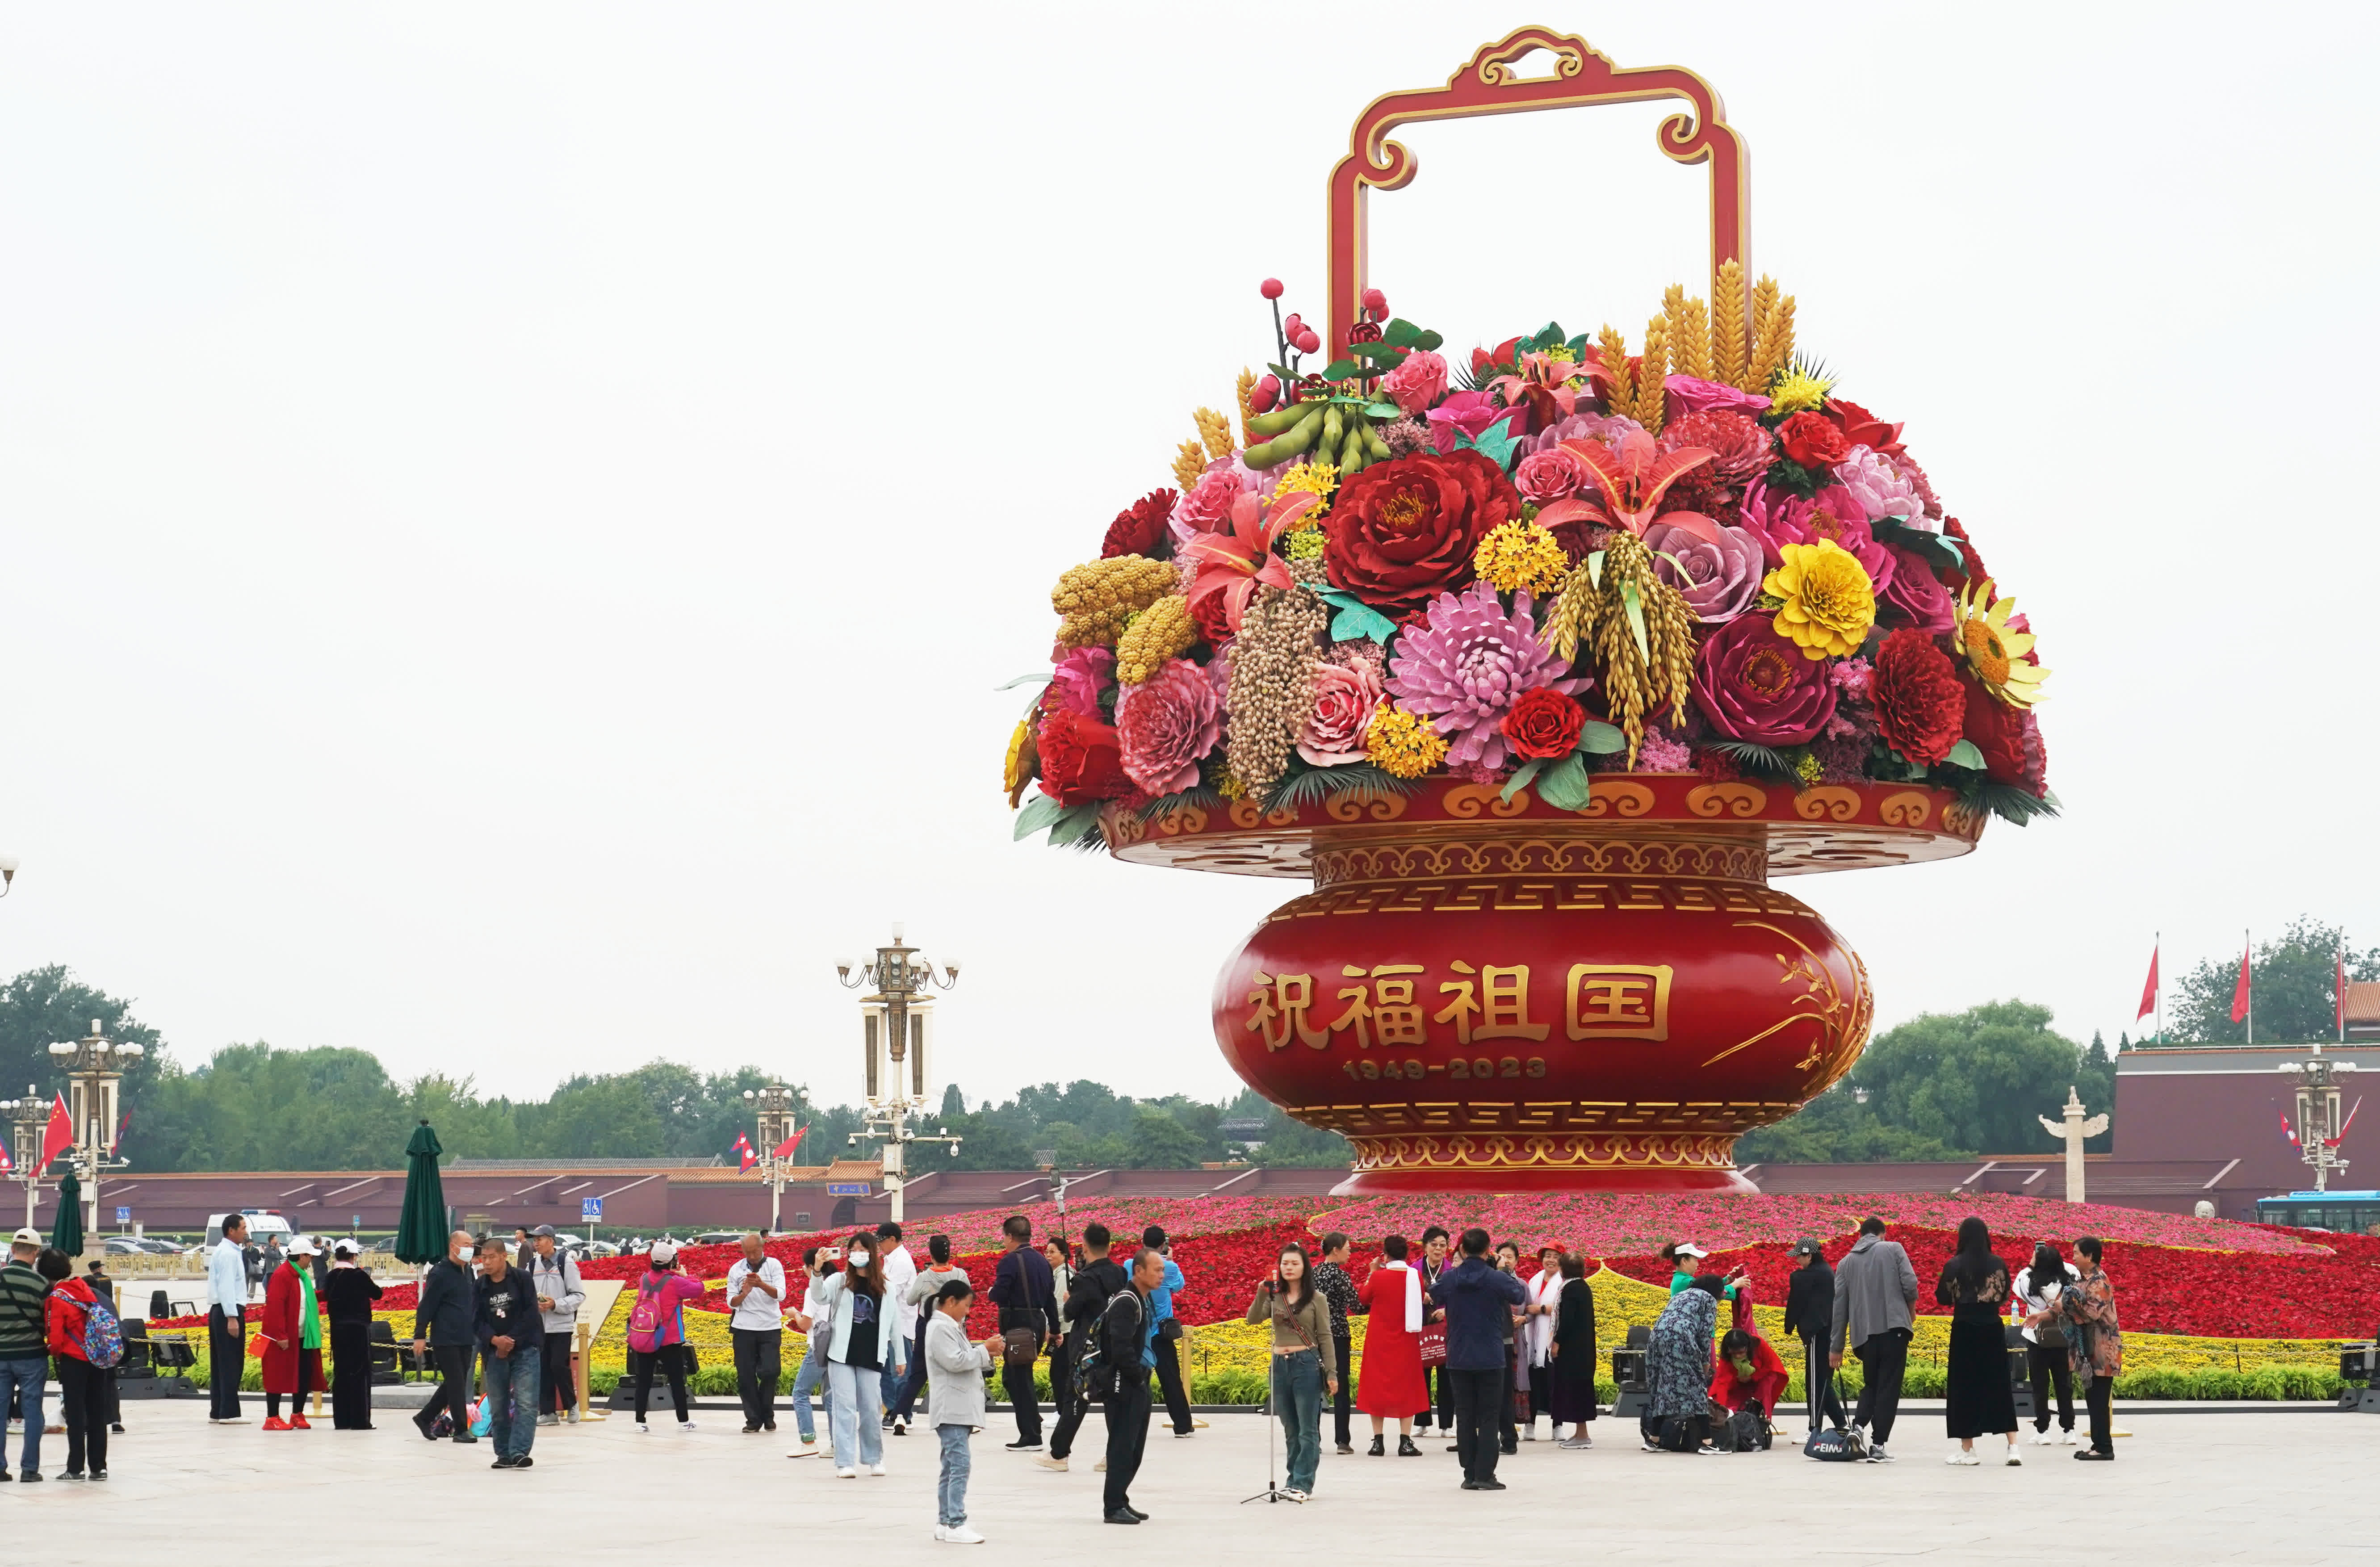 這是9月25日在北京天安門廣場拍攝的「祝福祖國」巨型花籃。